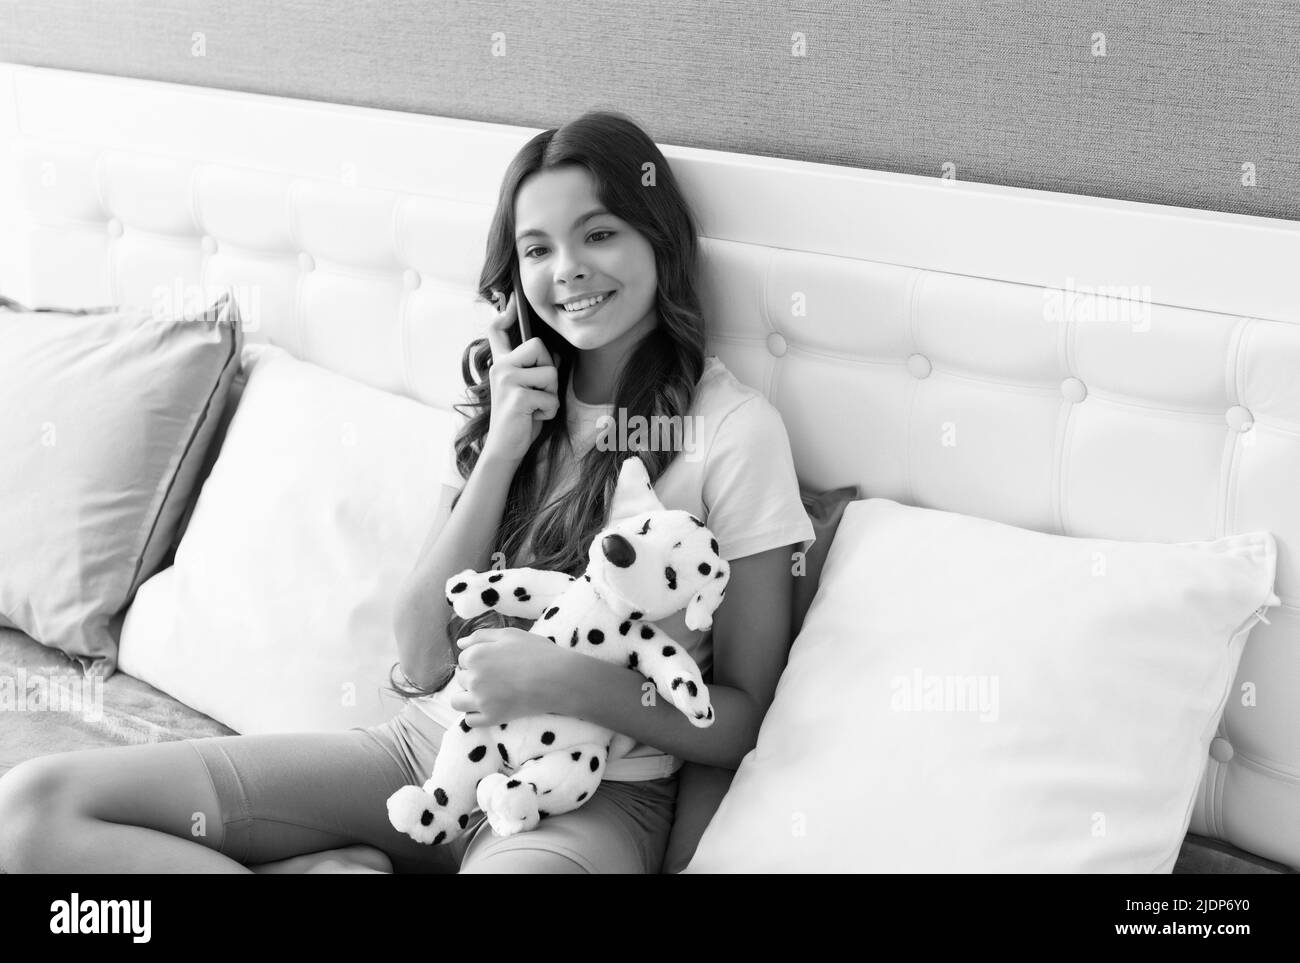 Un enfant heureux parle sur un téléphone portable assis avec un chiot jouet dans le lit, conversation téléphonique Banque D'Images